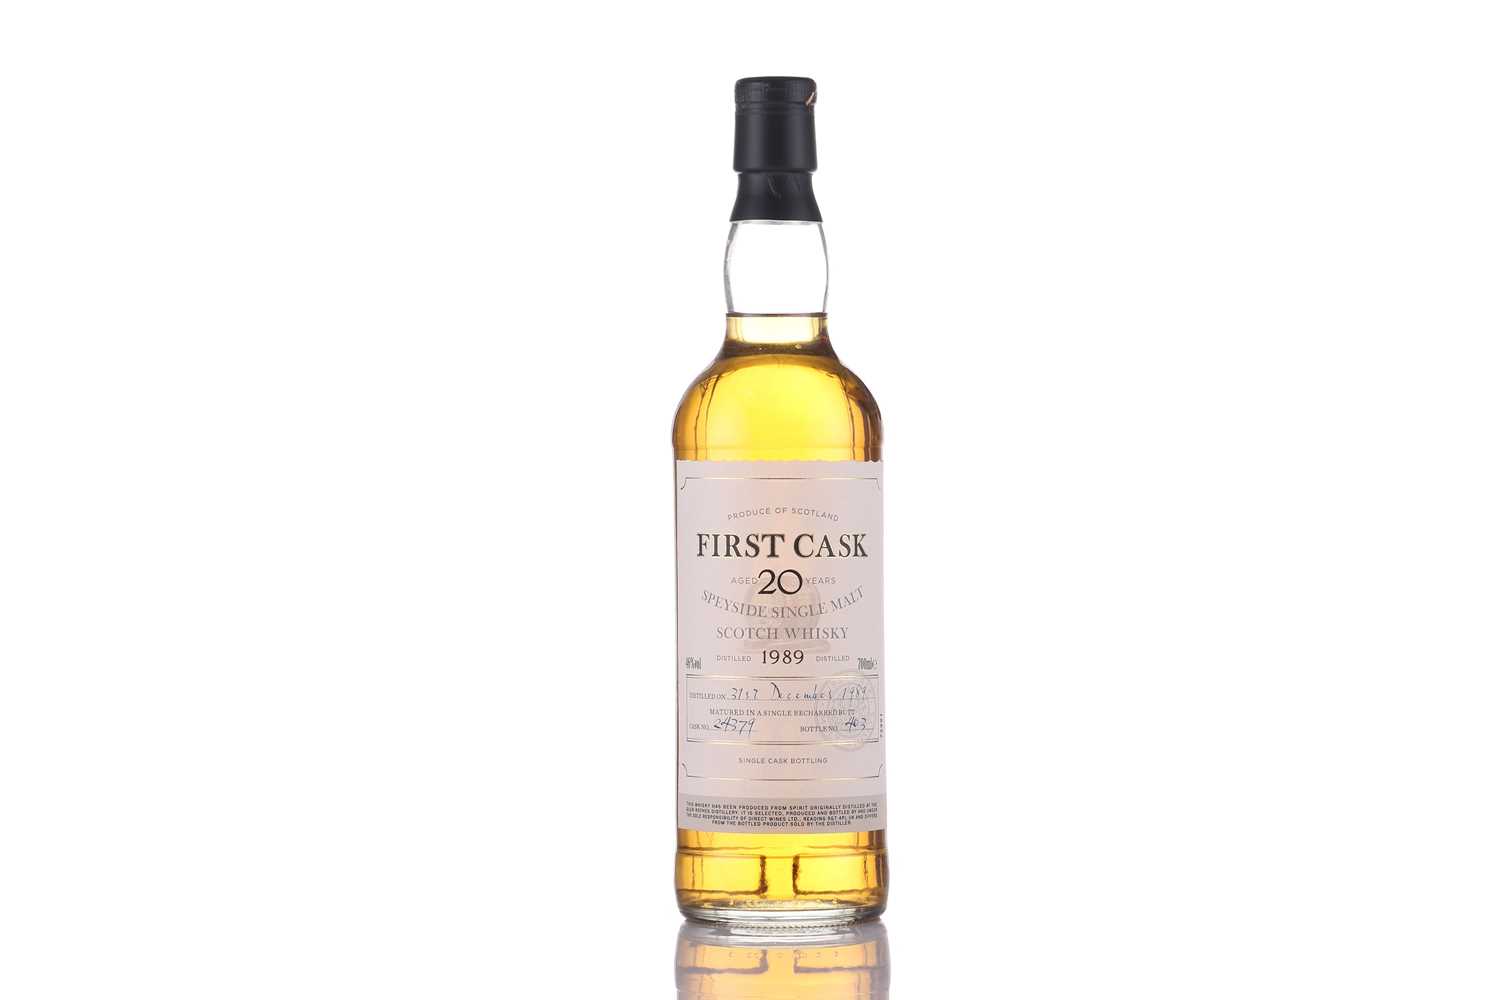 A bottle of First Cask Speyside Single Malt Scotch Whisky, 1989, Cask No. 24379, Bottle No. 403 ( - Image 6 of 7